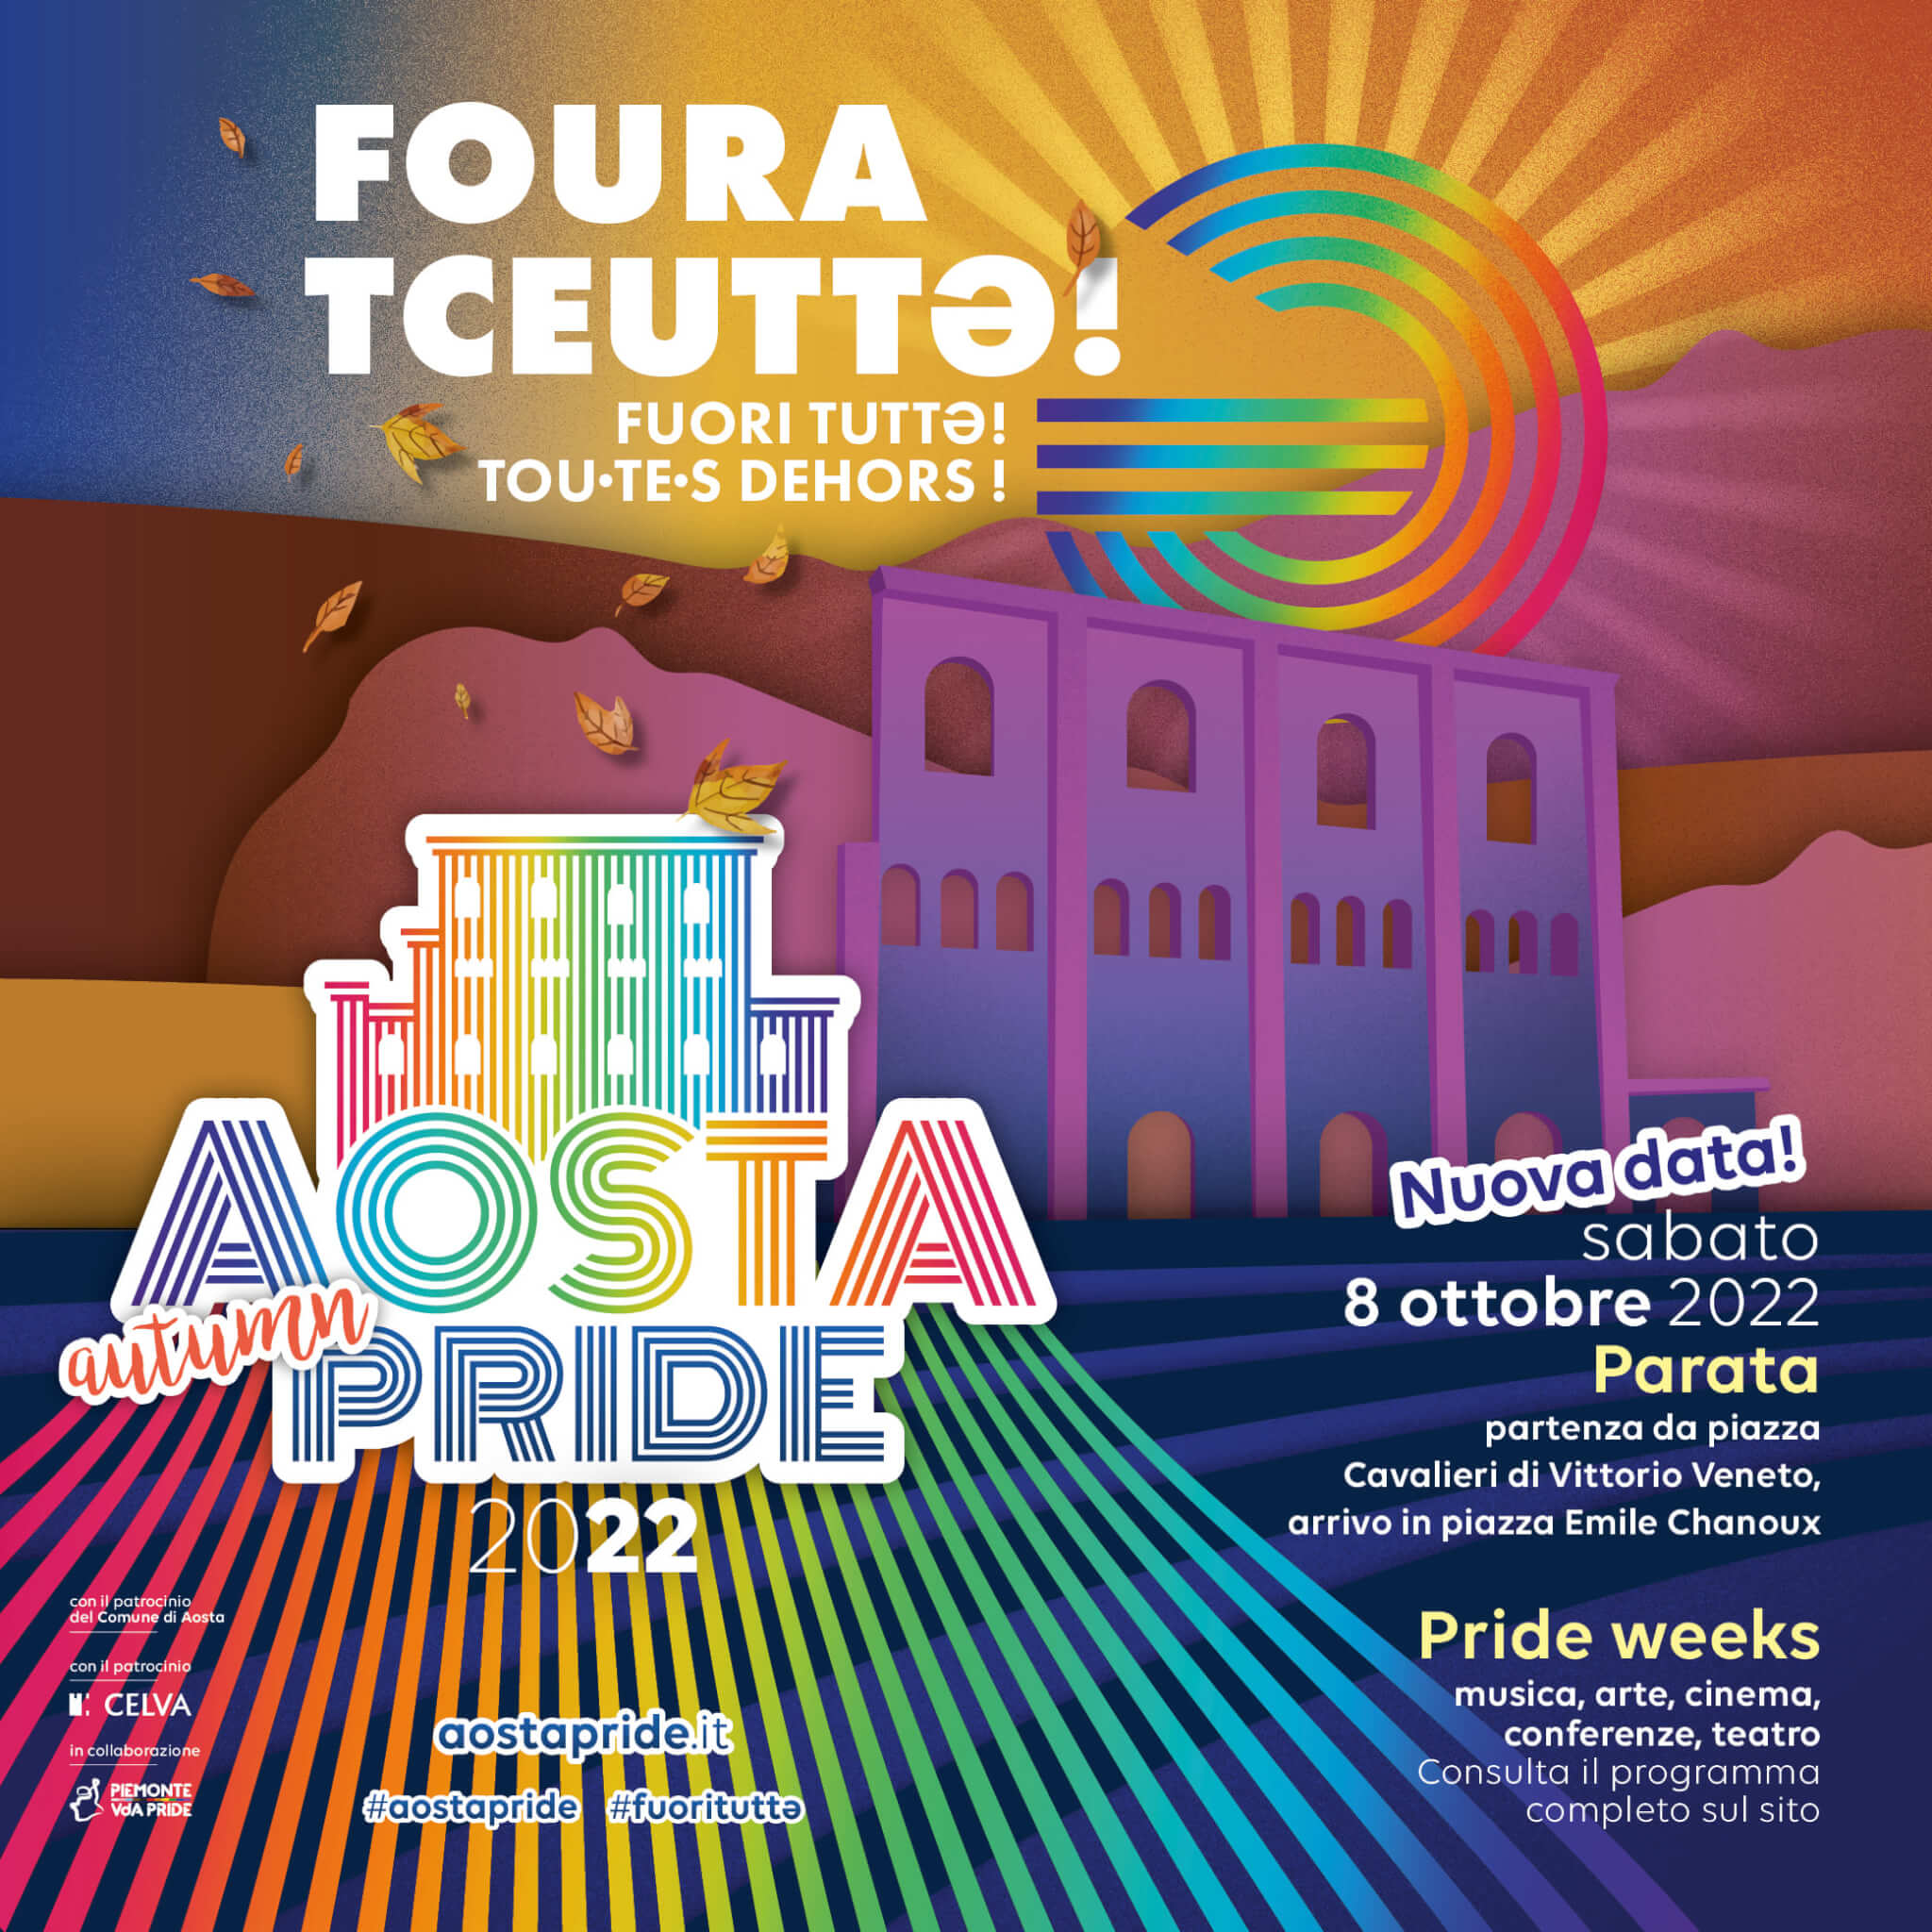 Aosta Pride 2022 posticipato all'8 ottobre causa elezioni, sarà il primo della città - aostapride locandina 8 ottobre FB - Gay.it